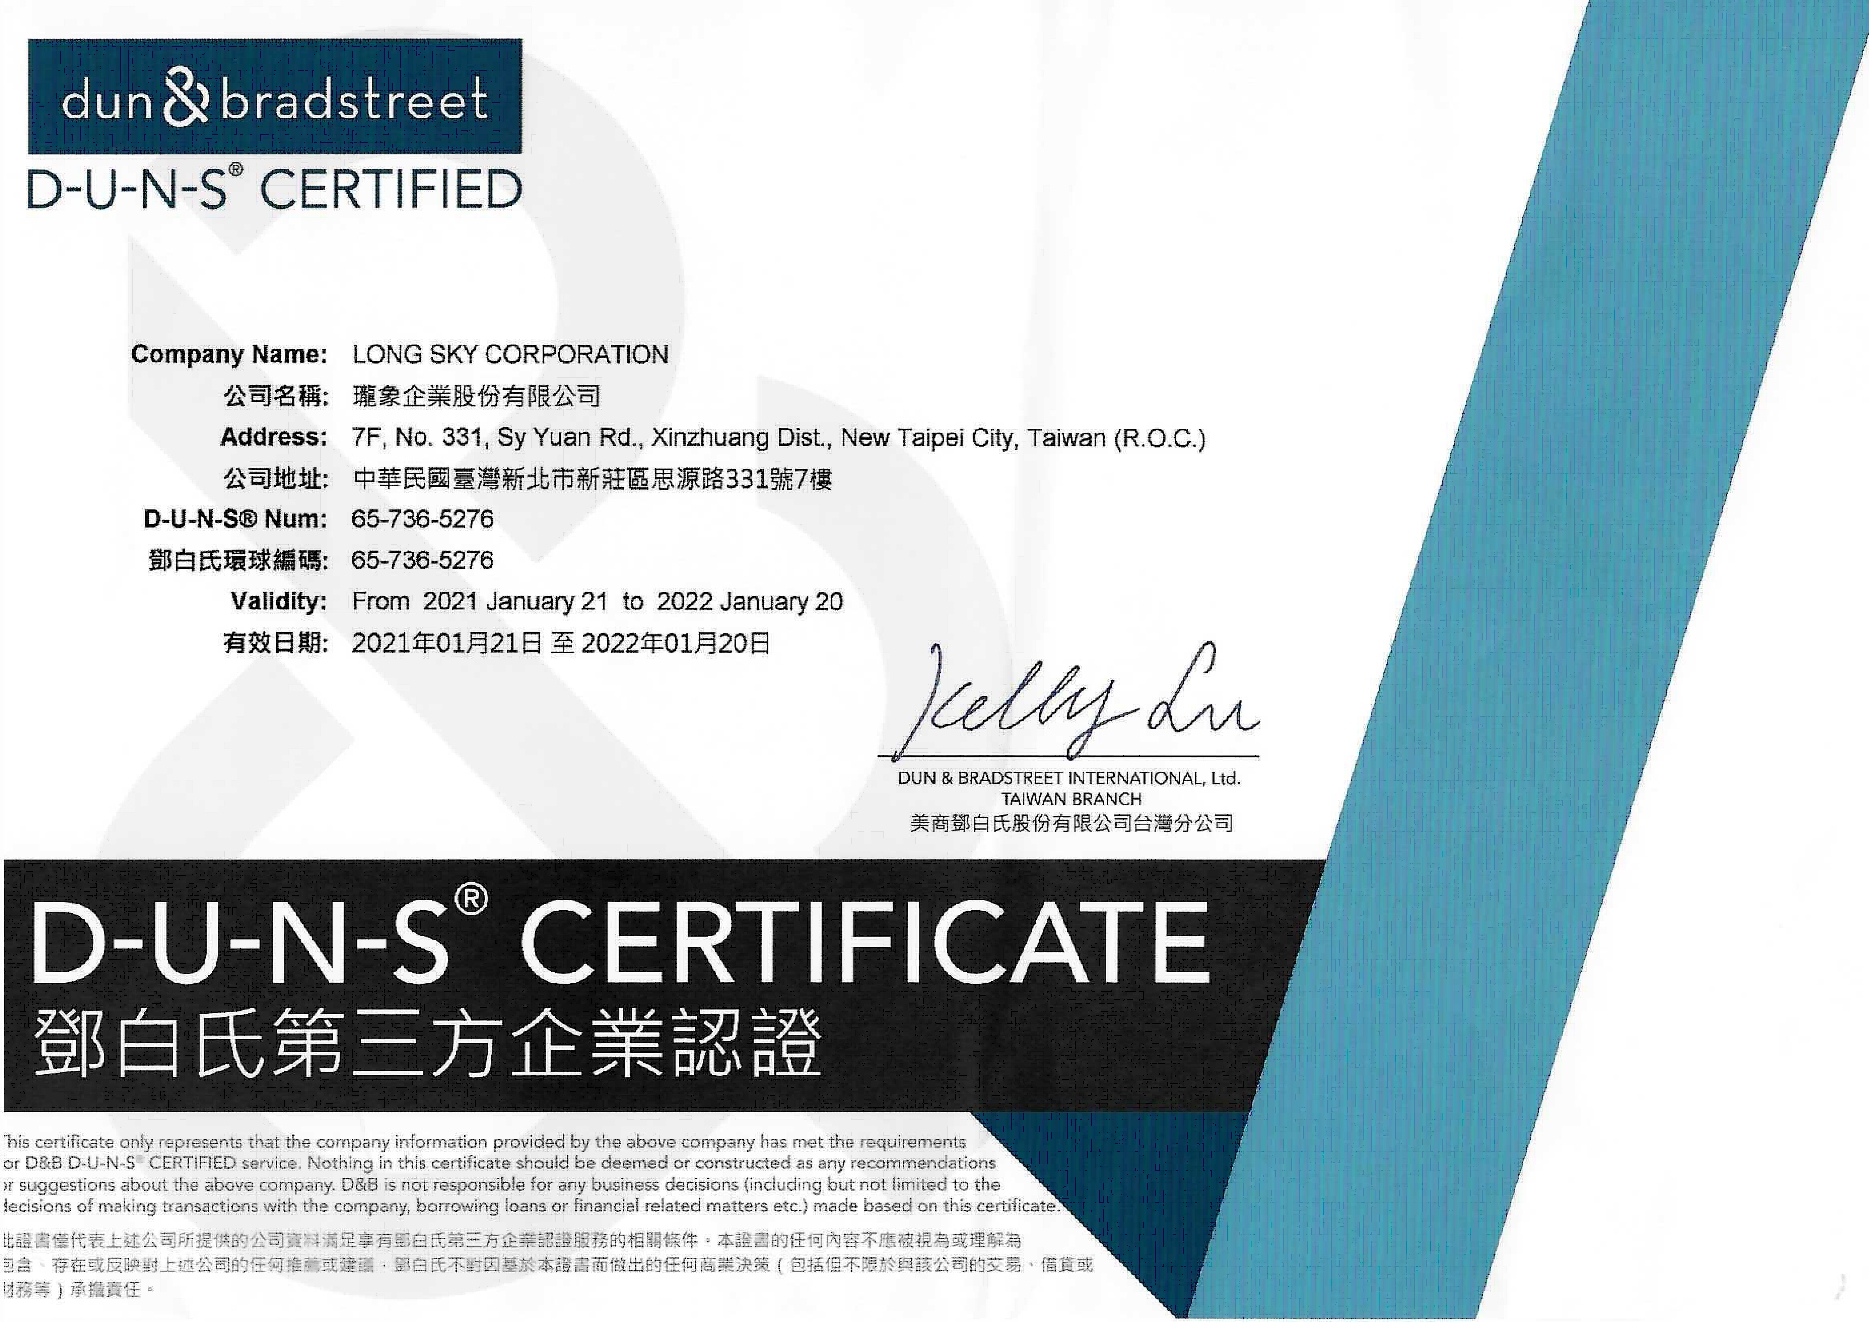 D-U-N-S certificate_2021